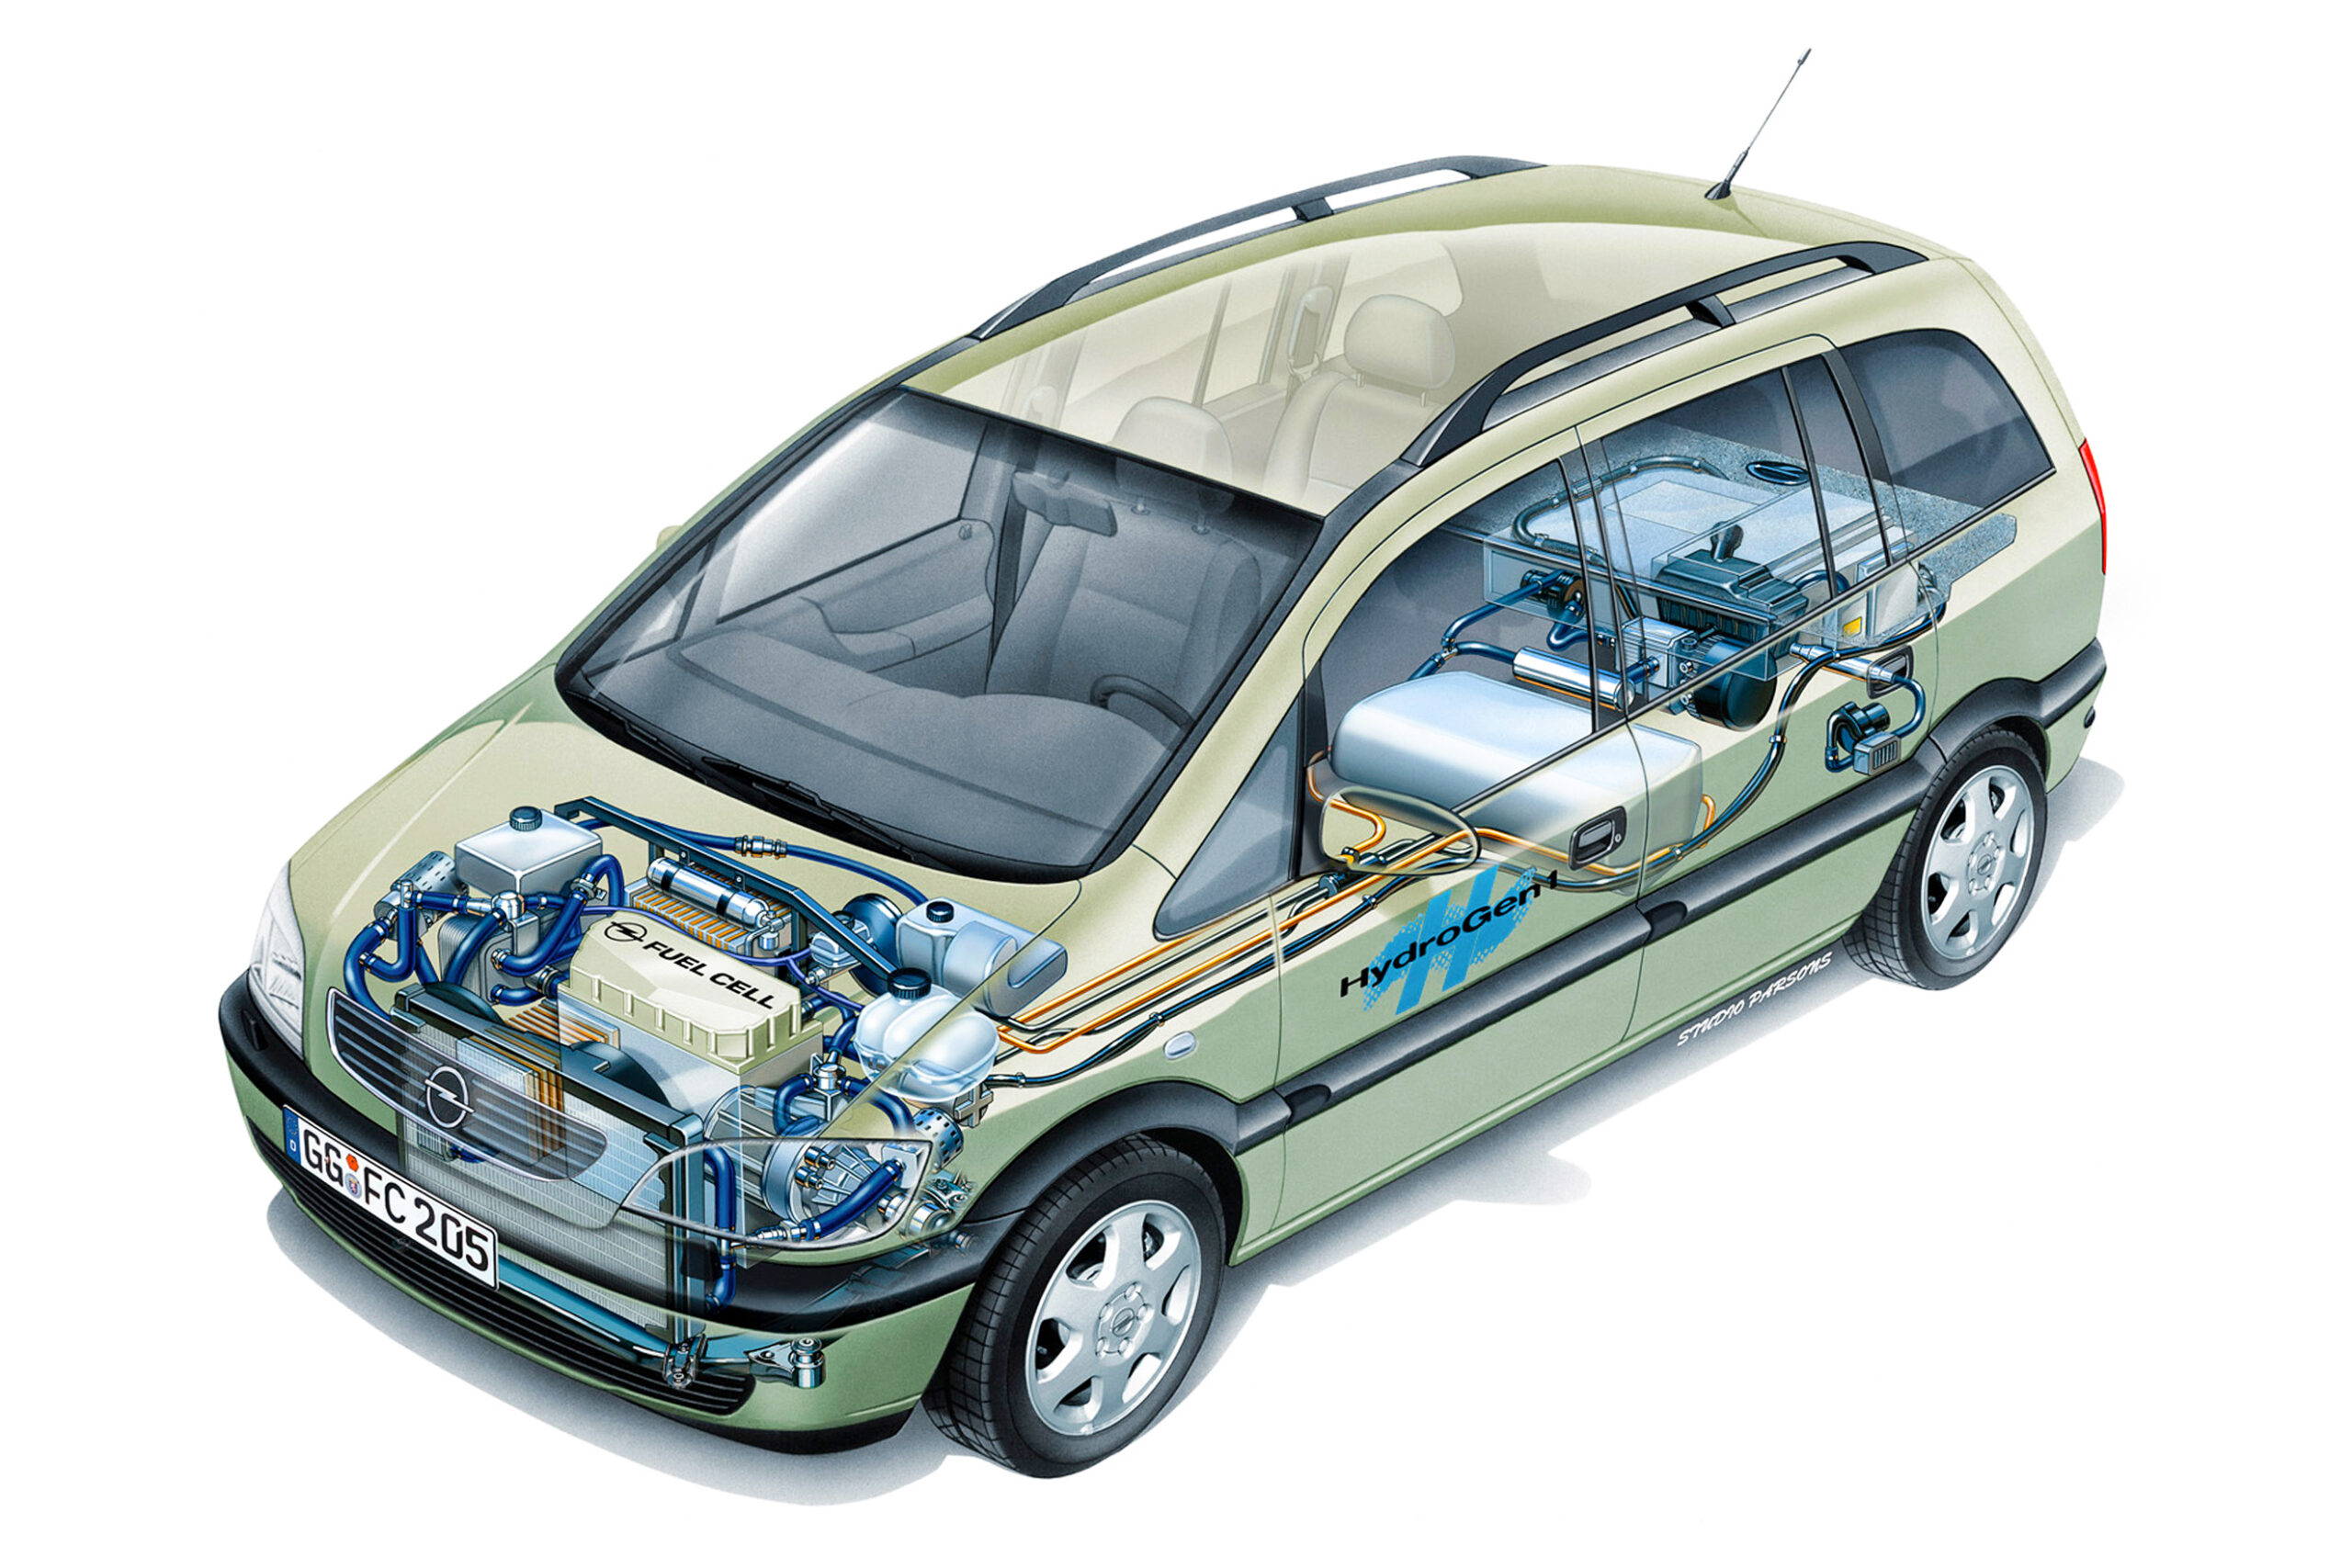 Le auto a idrogeno sono il futuro? 20 anni fa Opel HydroGen1 era già realtà